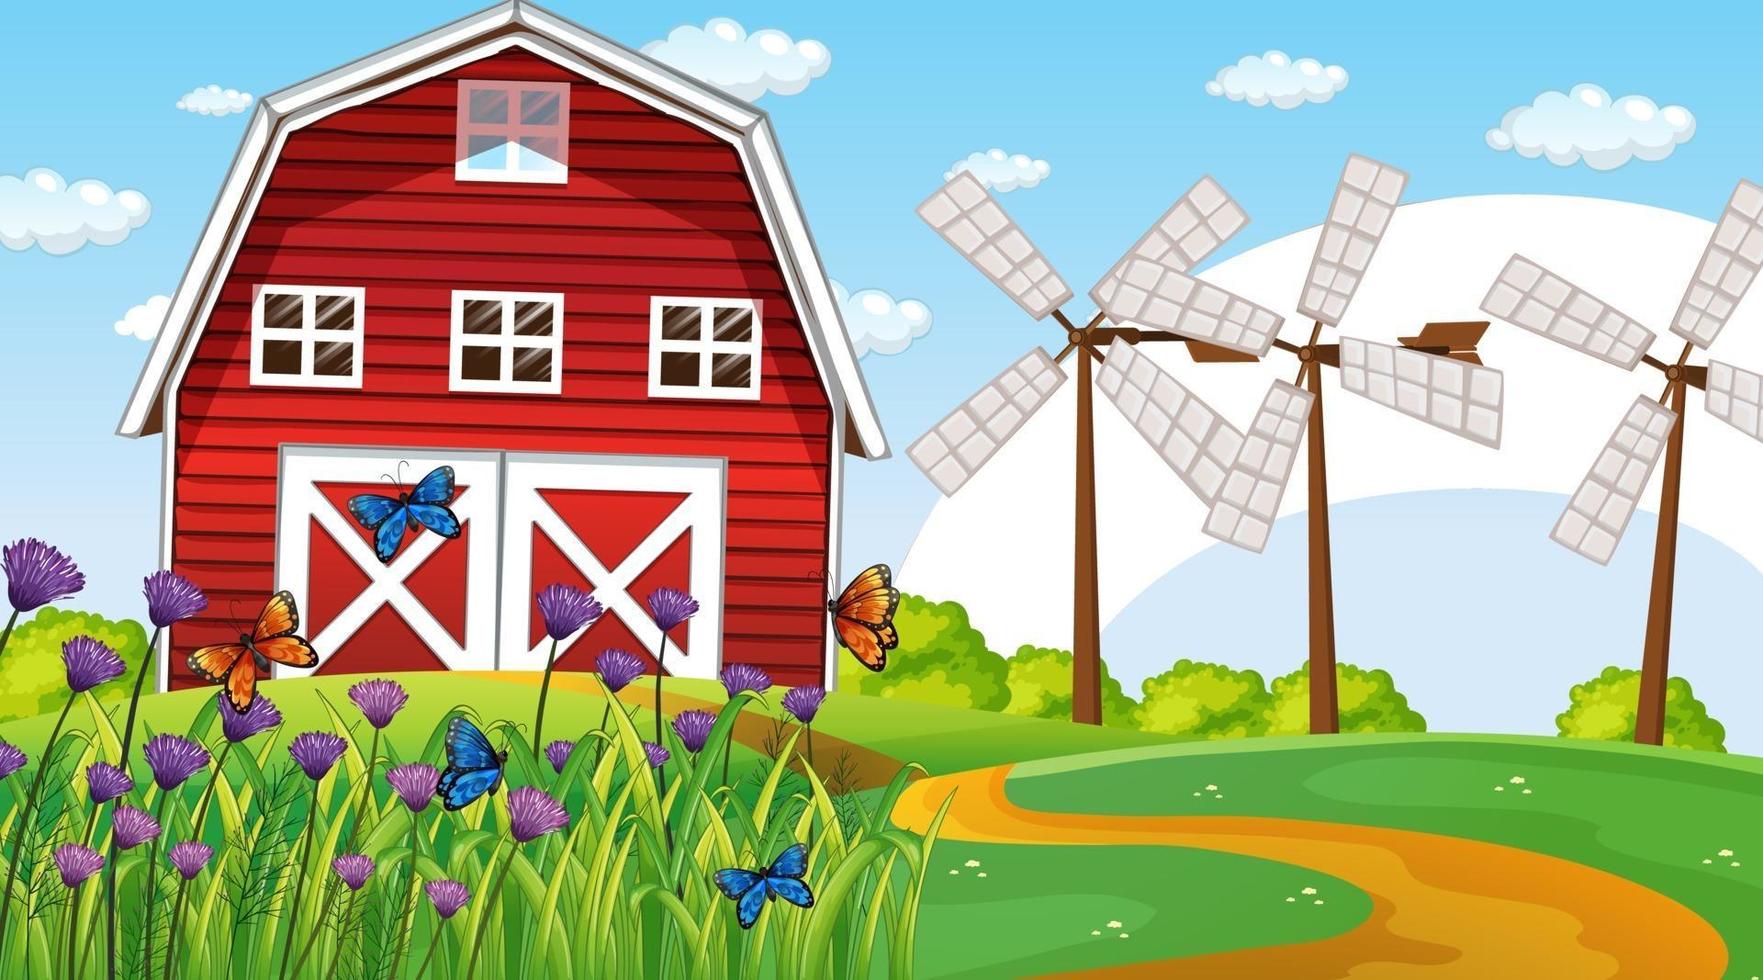 scène de paysage de ferme avec grange et moulin à vent vecteur